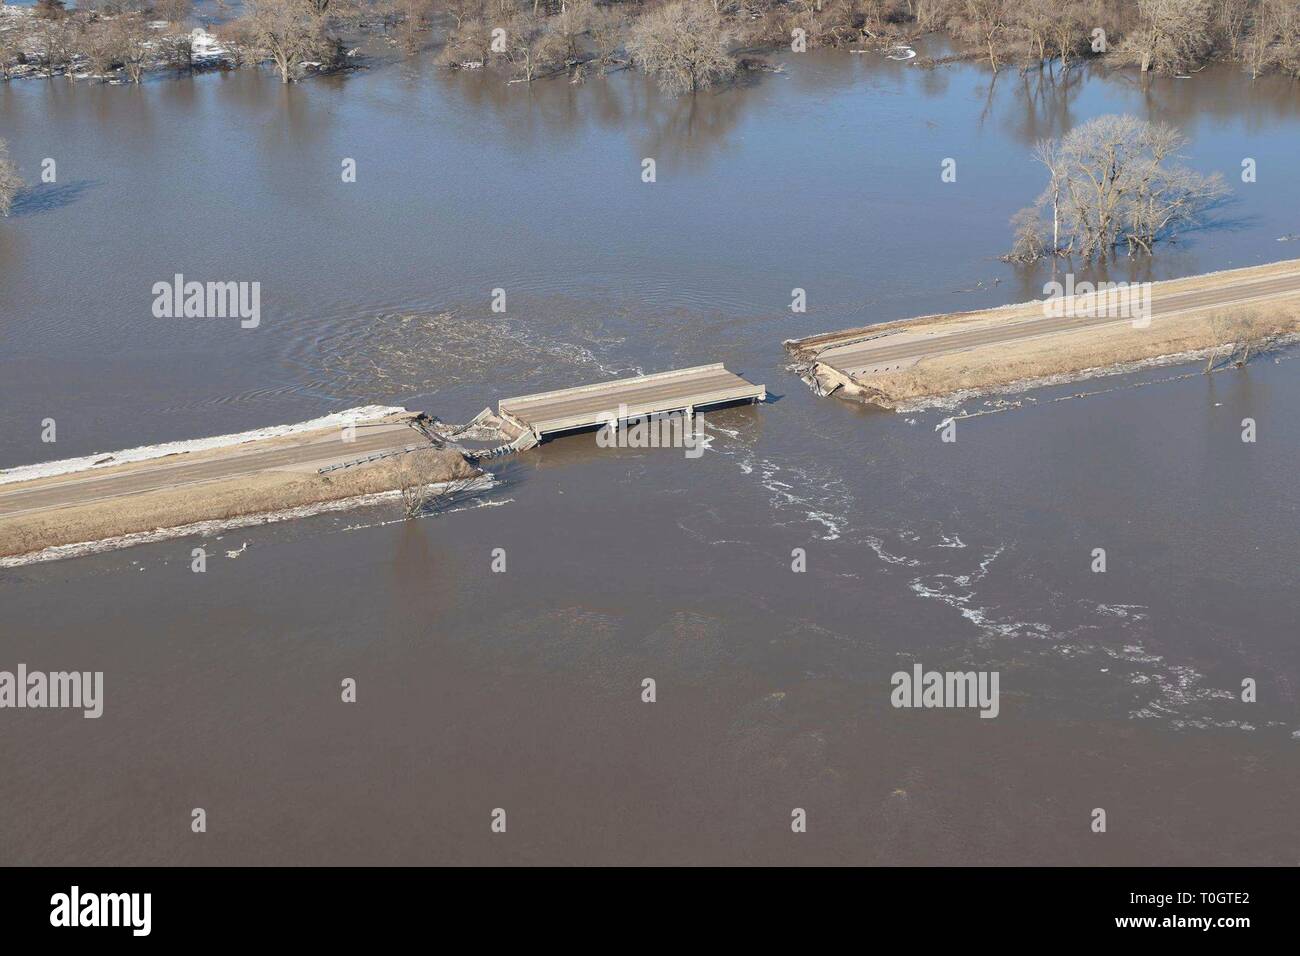 Die Nebraska 22 Brücke wird ausgewaschen nach massiven Hochwasser durch die Region am 16. März 2019 in der Nähe von Genua, Nebraska schwankte. Historische Hochwasser durch schnelles Schmelzen von Schnee fegen durch die ländlichen Gemeinschaften in Nebraska und Iowa tötet mindestens vier Menschen in den Ebenen und Midwest verursacht. Stockfoto